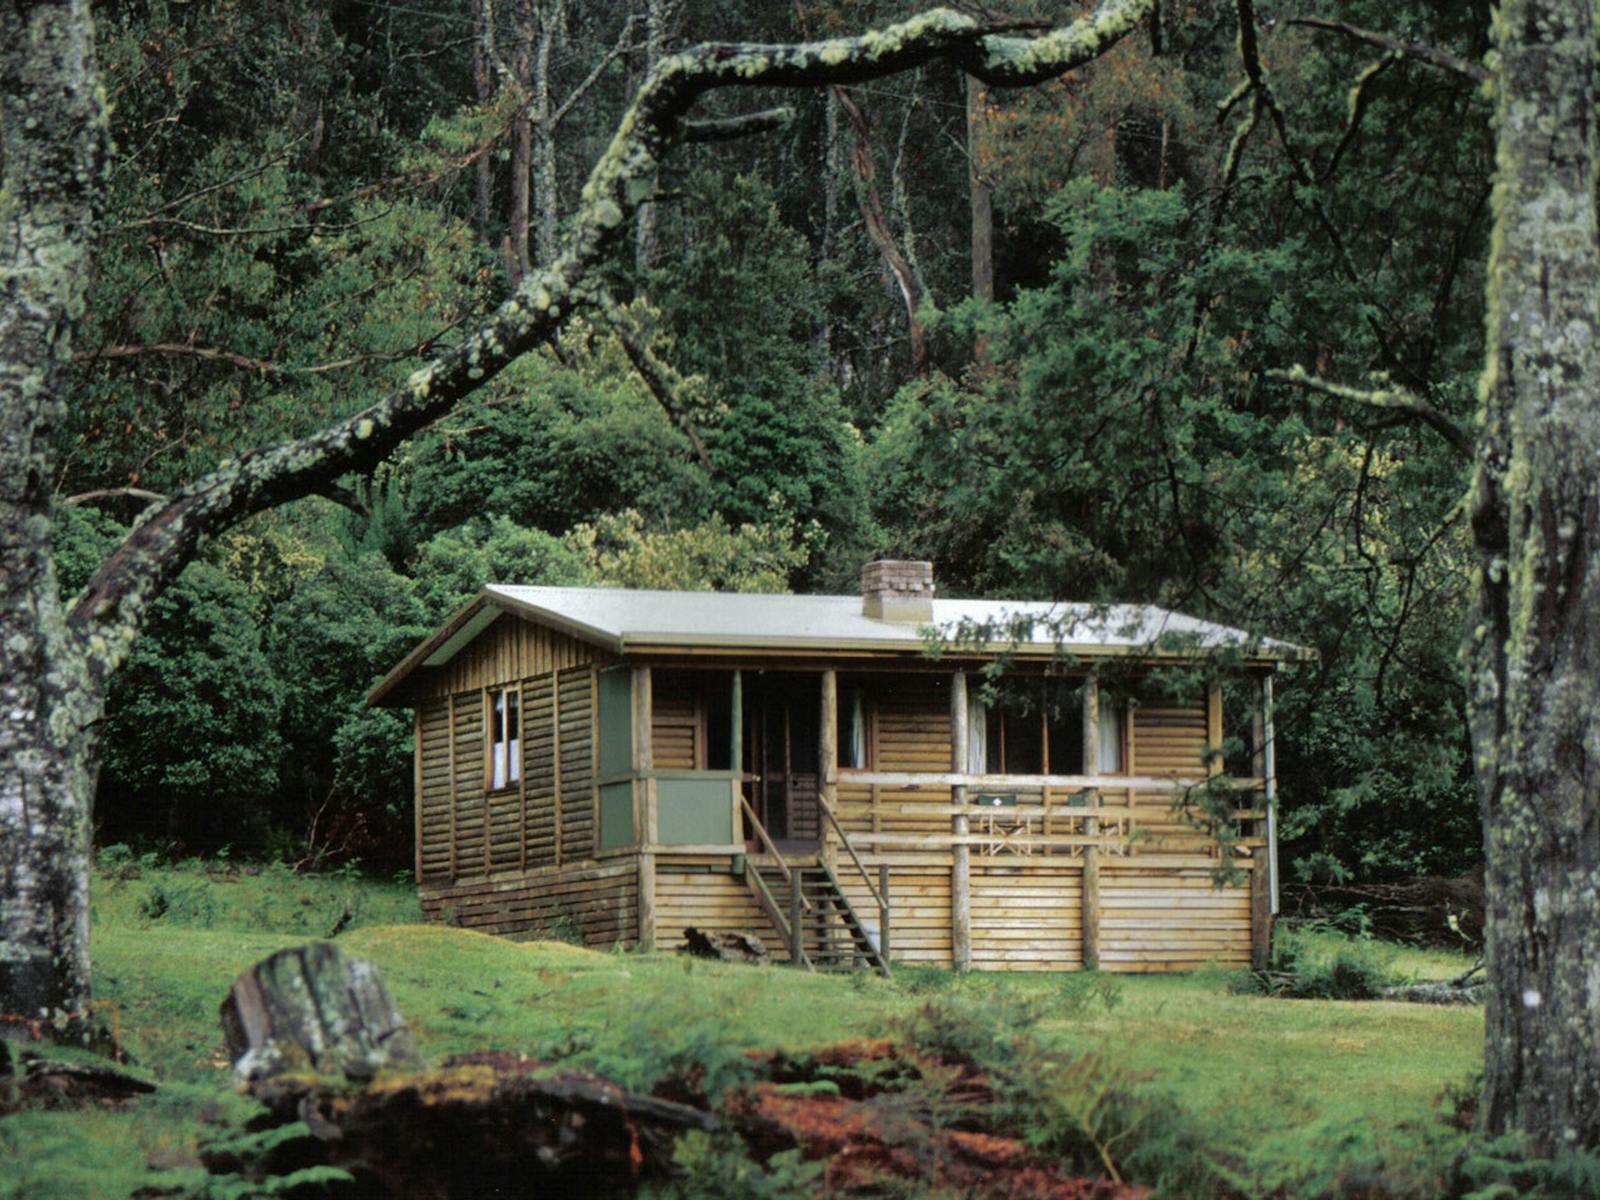 External view of Flora log cabin